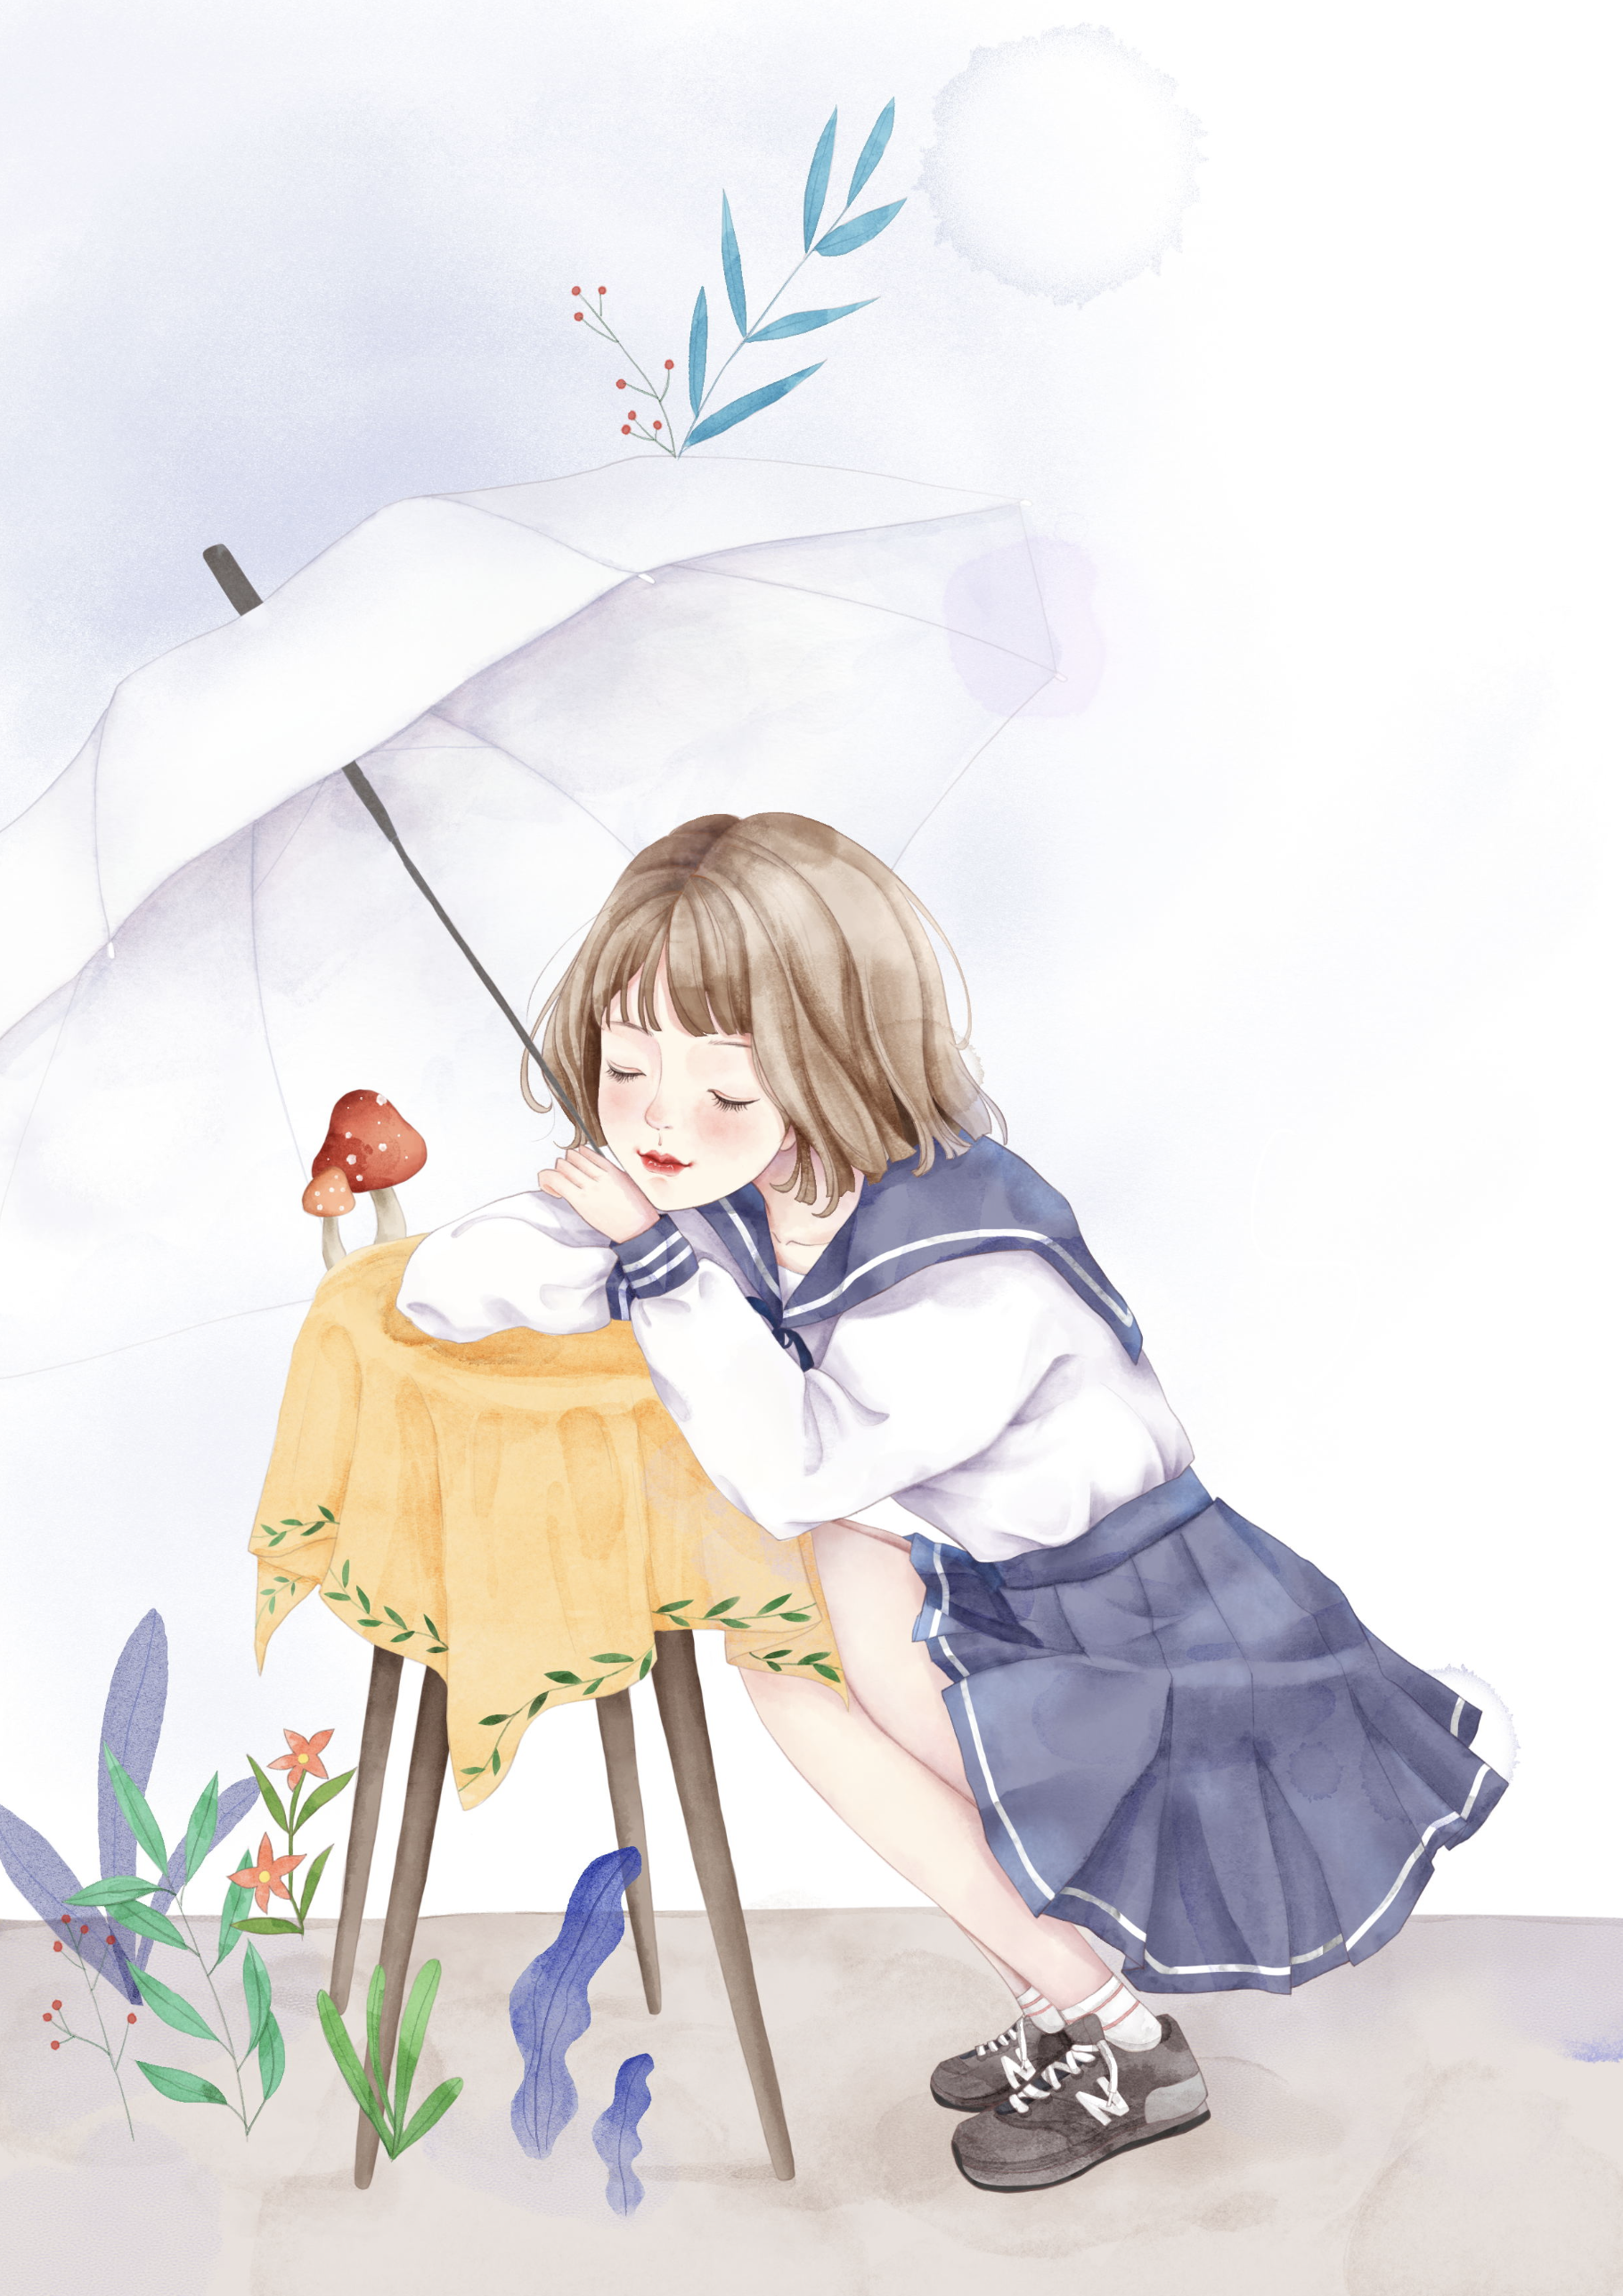 原创作品:撑雨伞的姑娘